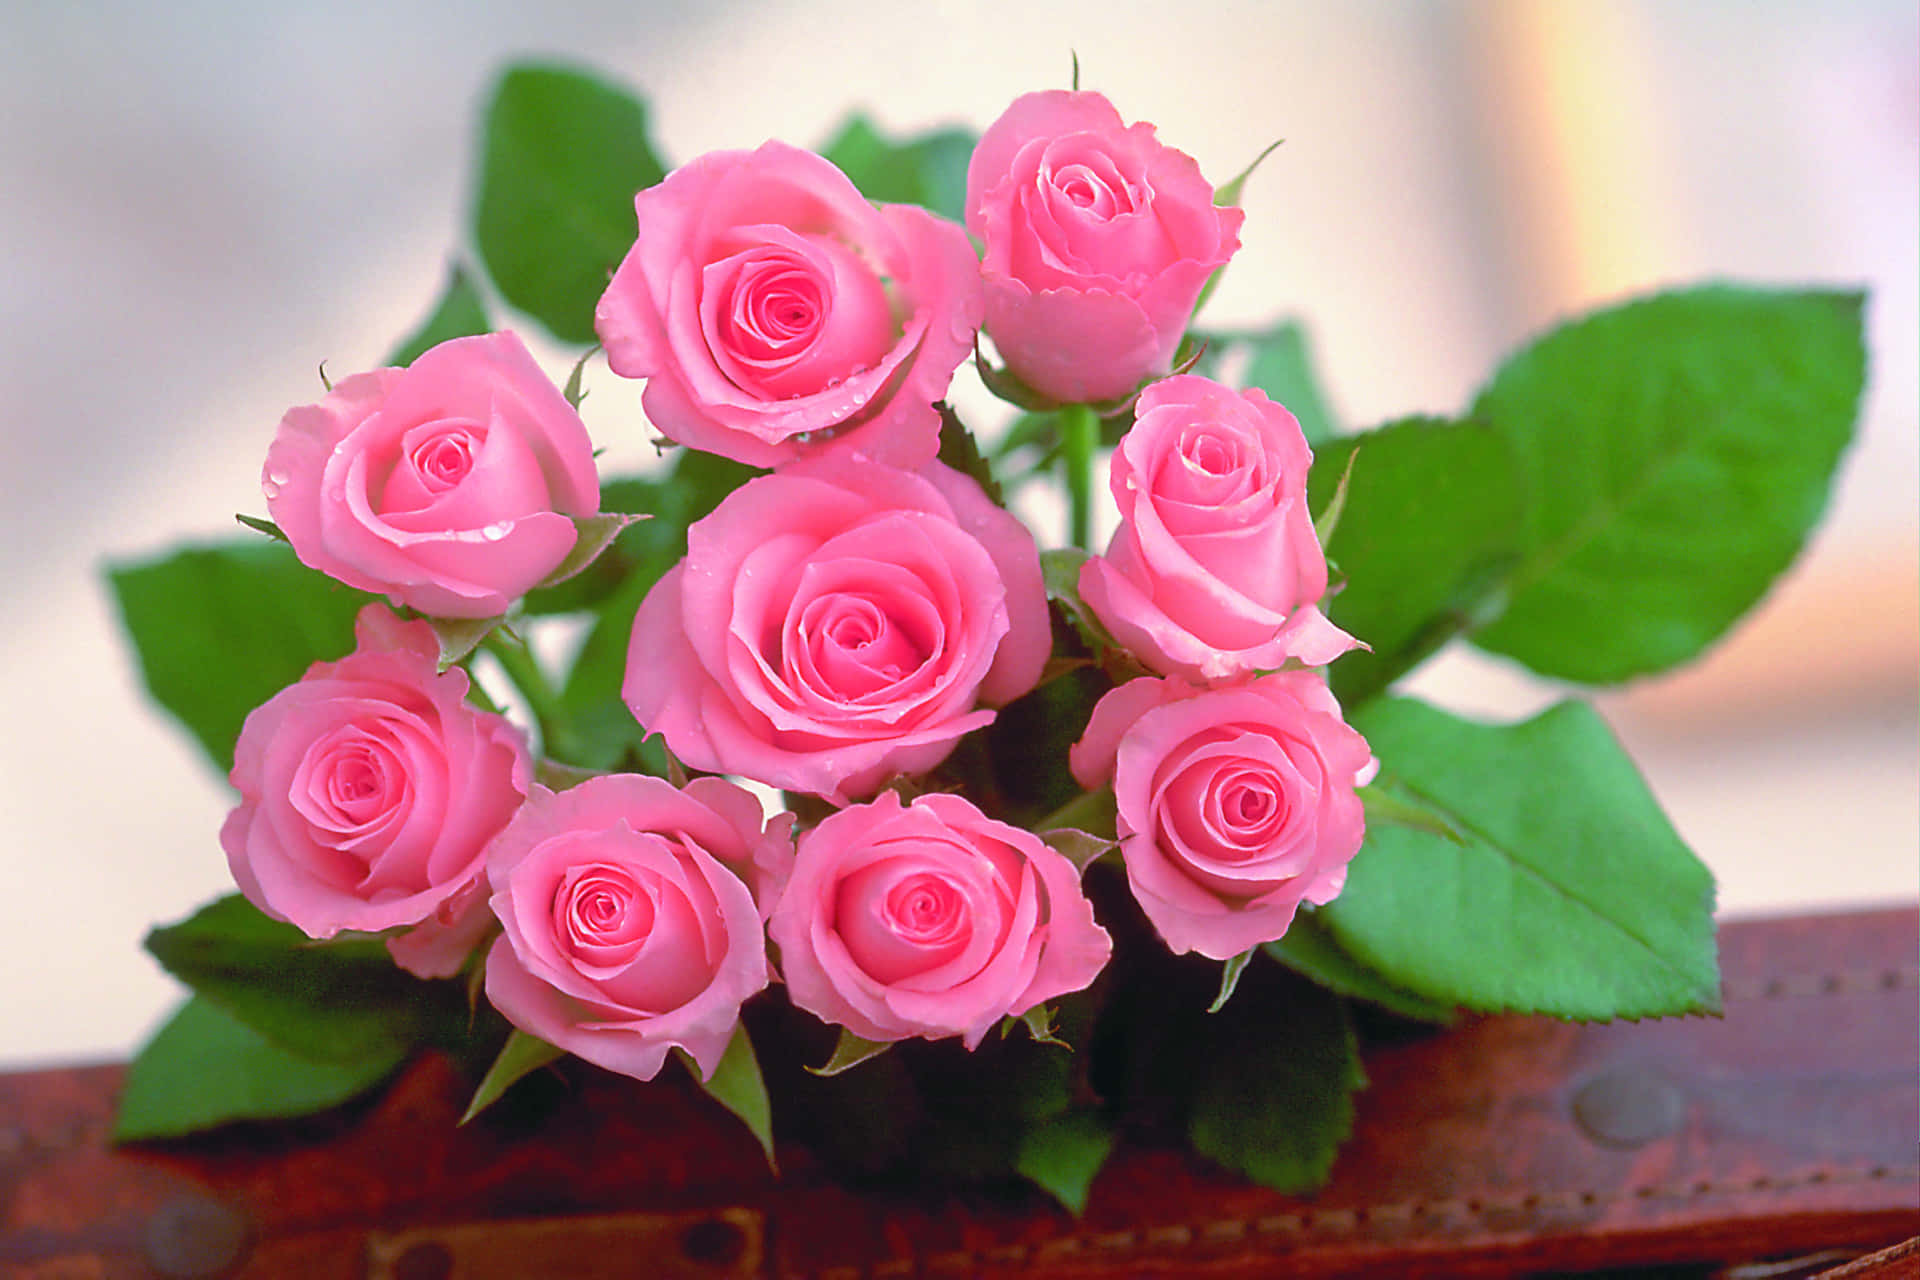 Einezarte Und Lebendige Rosa Blume.